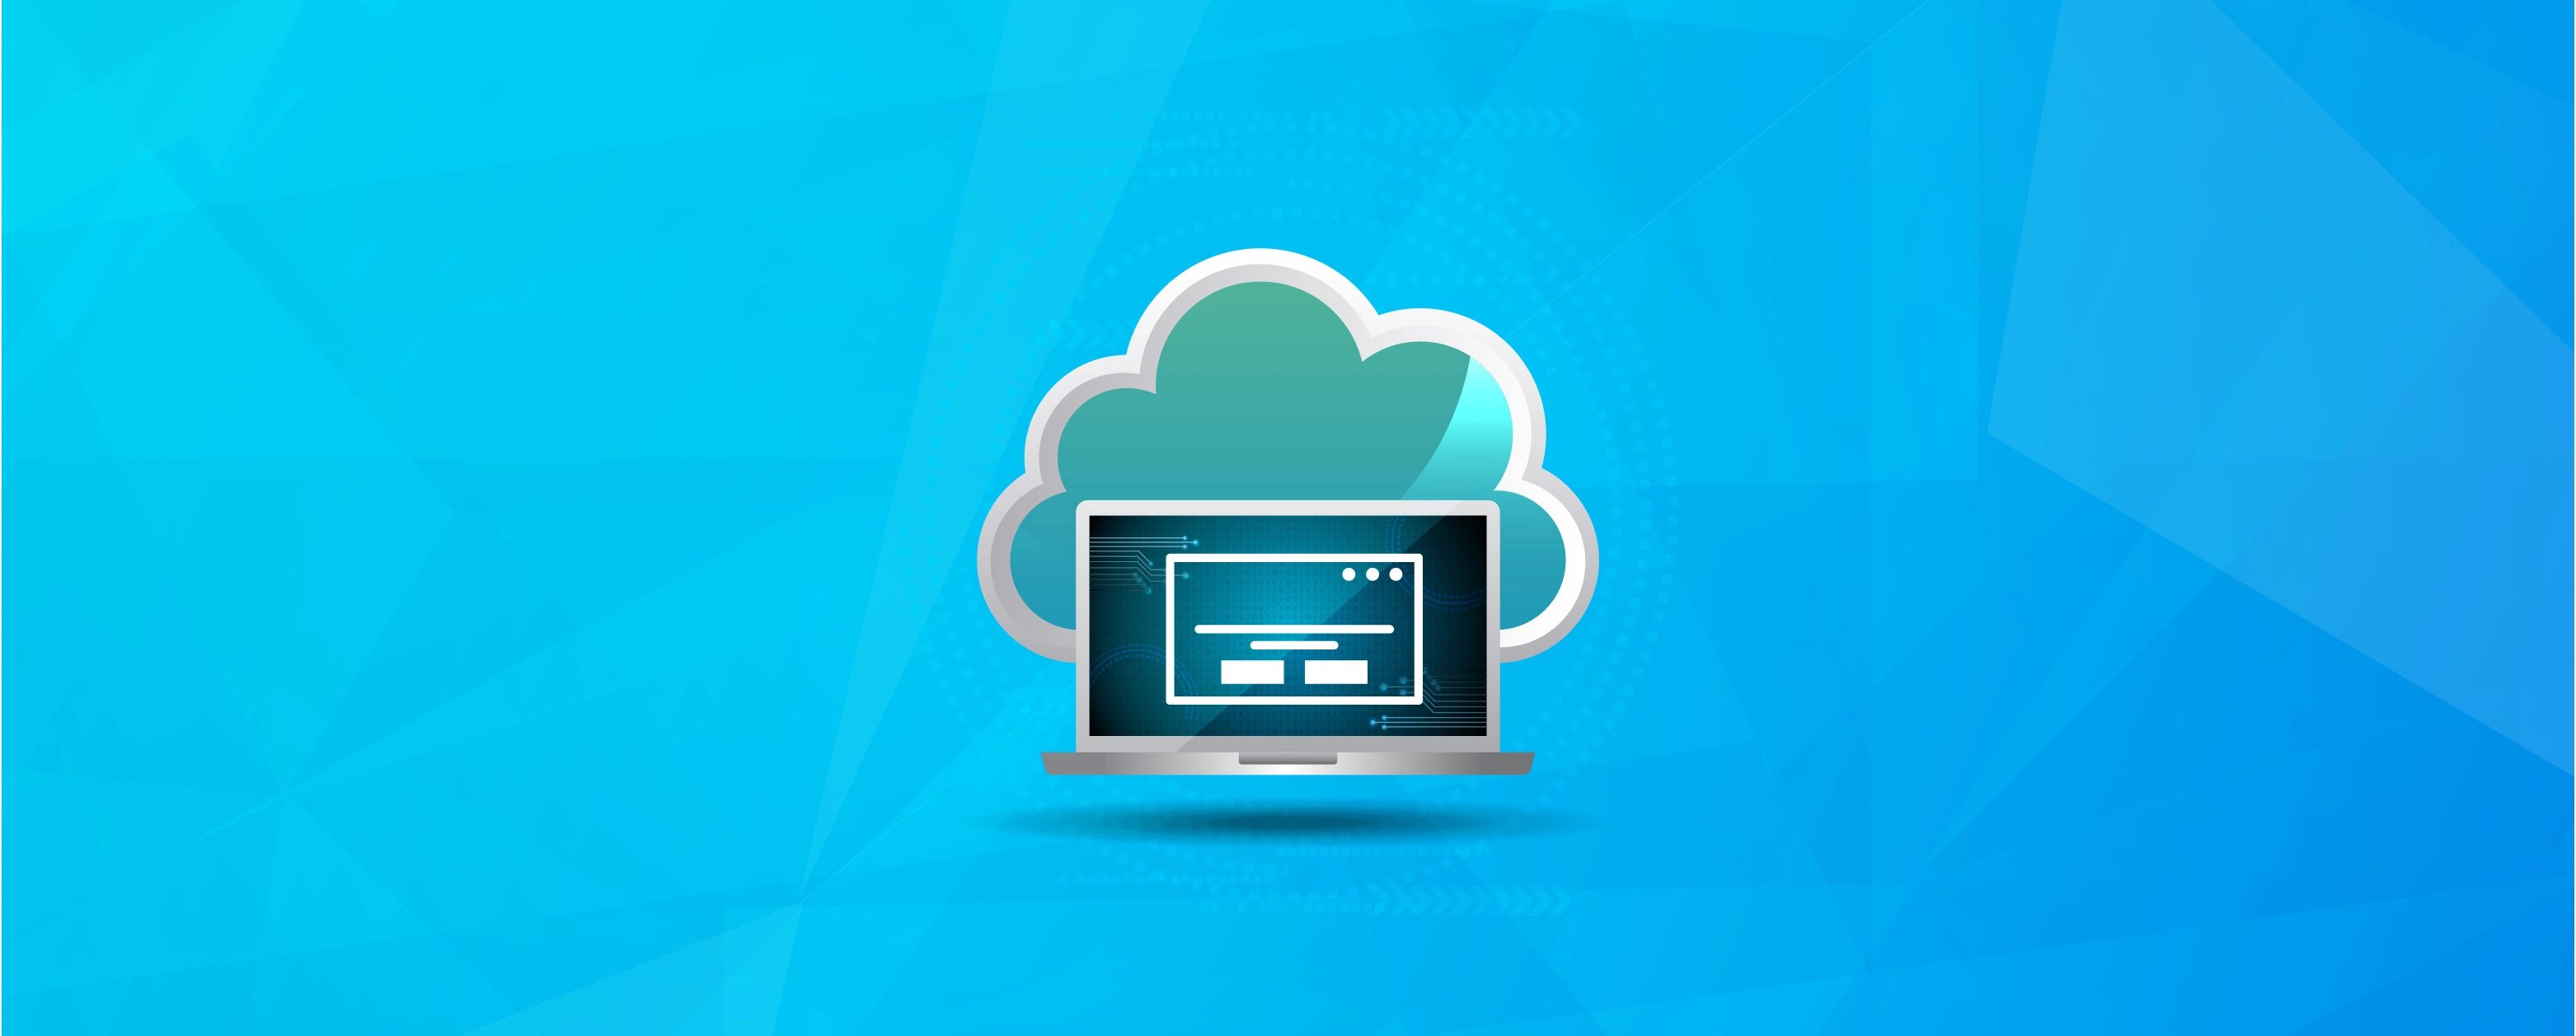 WebSocket cloud hosting